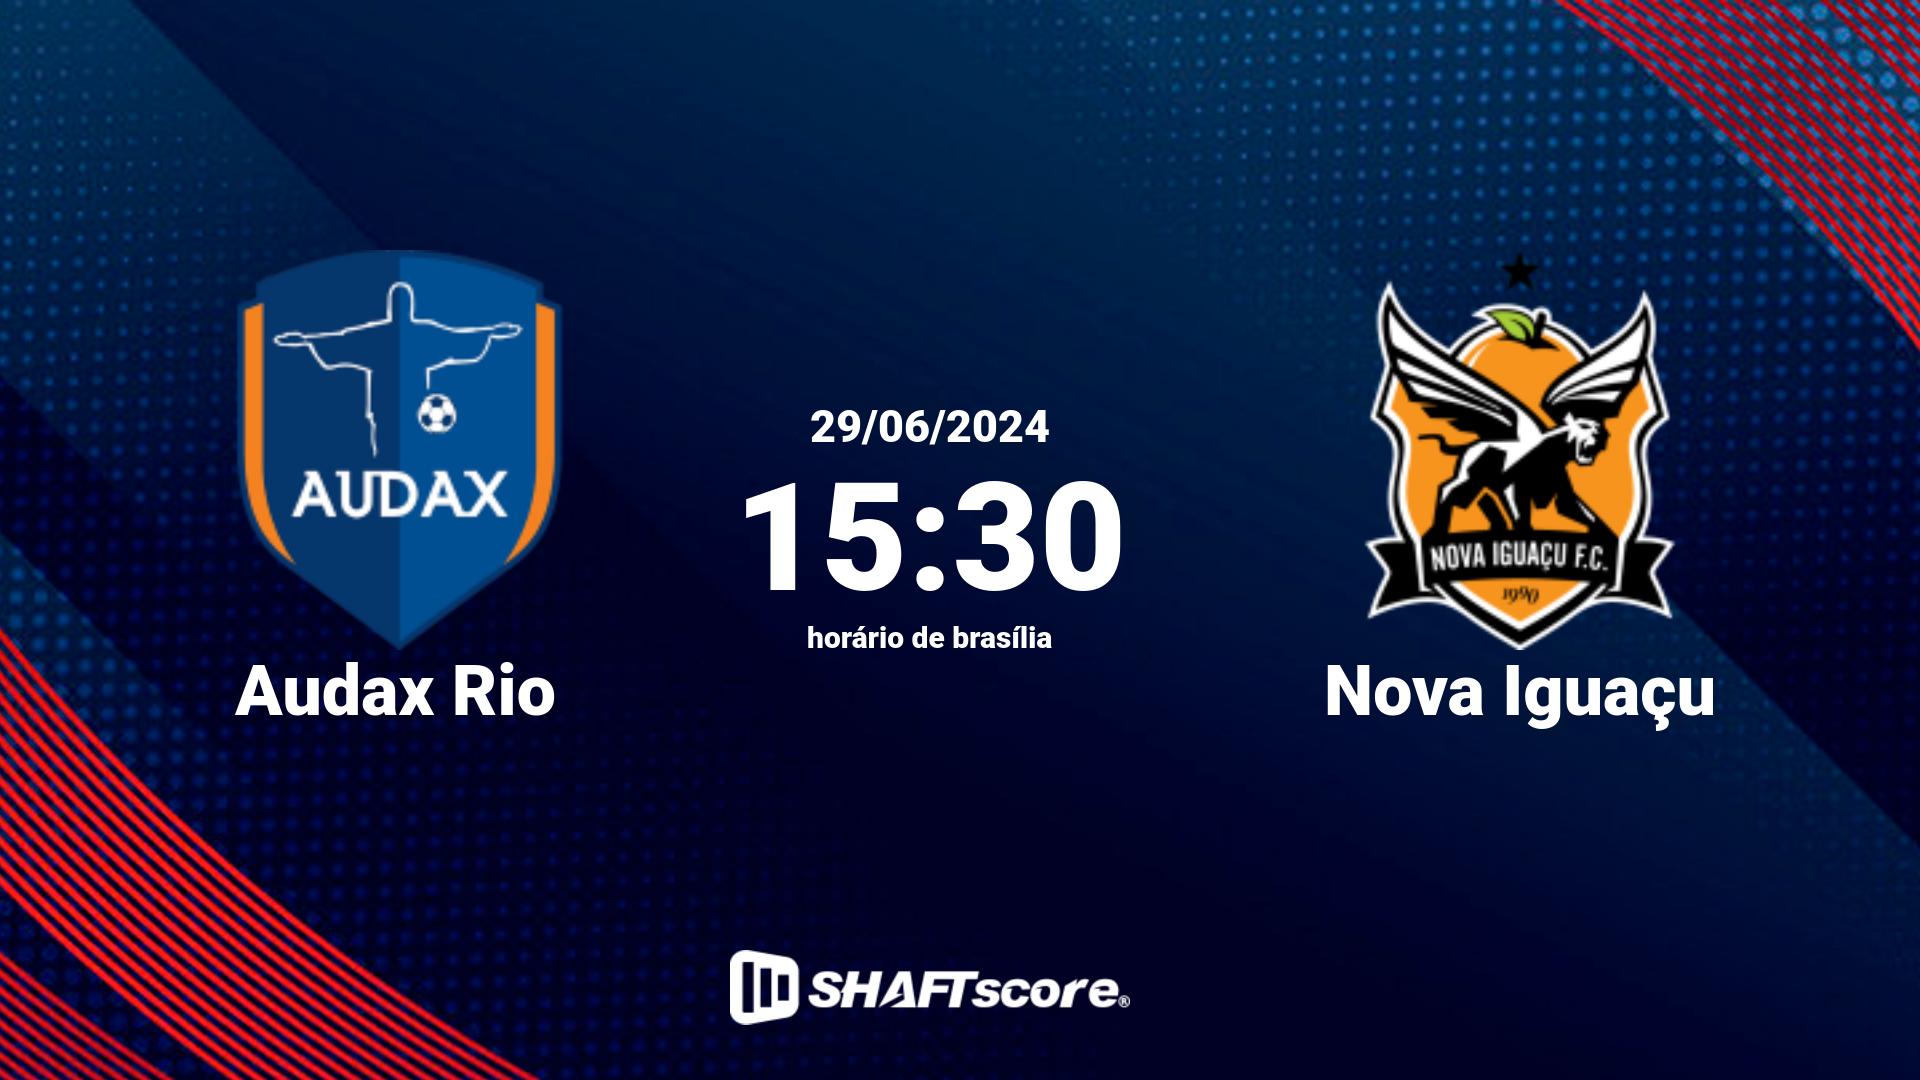 Estatísticas do jogo Audax Rio vs Nova Iguaçu 29.06 15:30